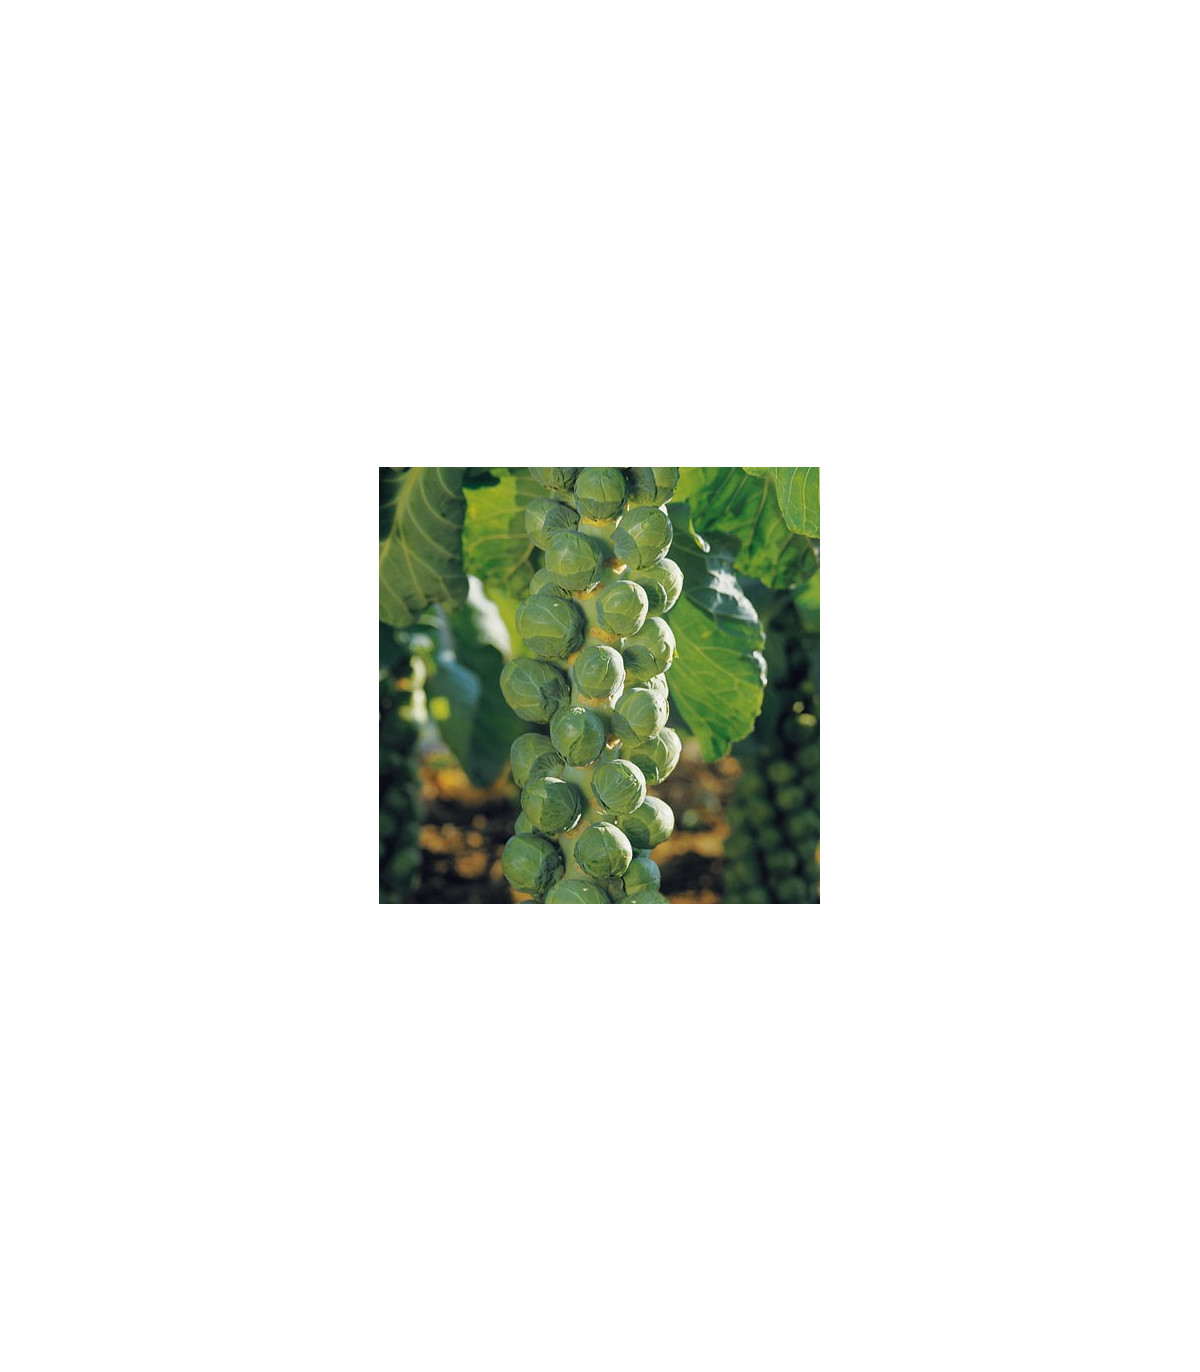 Kapusta růžičková Hilds Ideal - Brassica oleracea - osivo kapusty - 0,5 g